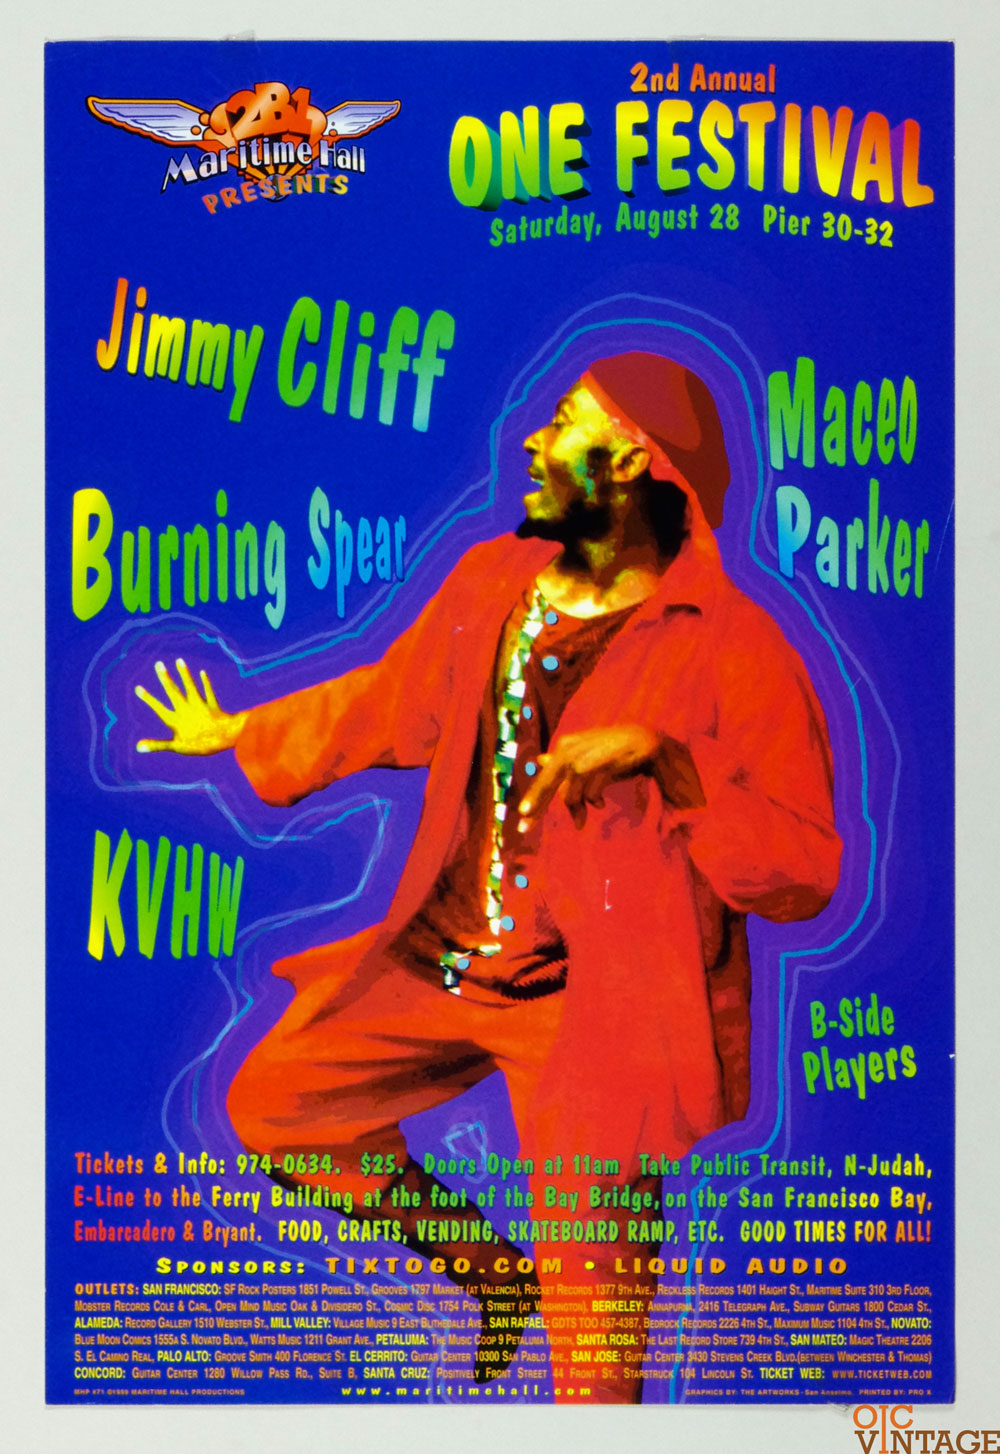 Maritime Hall 1999 Aug 28 Poster Jimmy Cliff Burning Spear KVHW